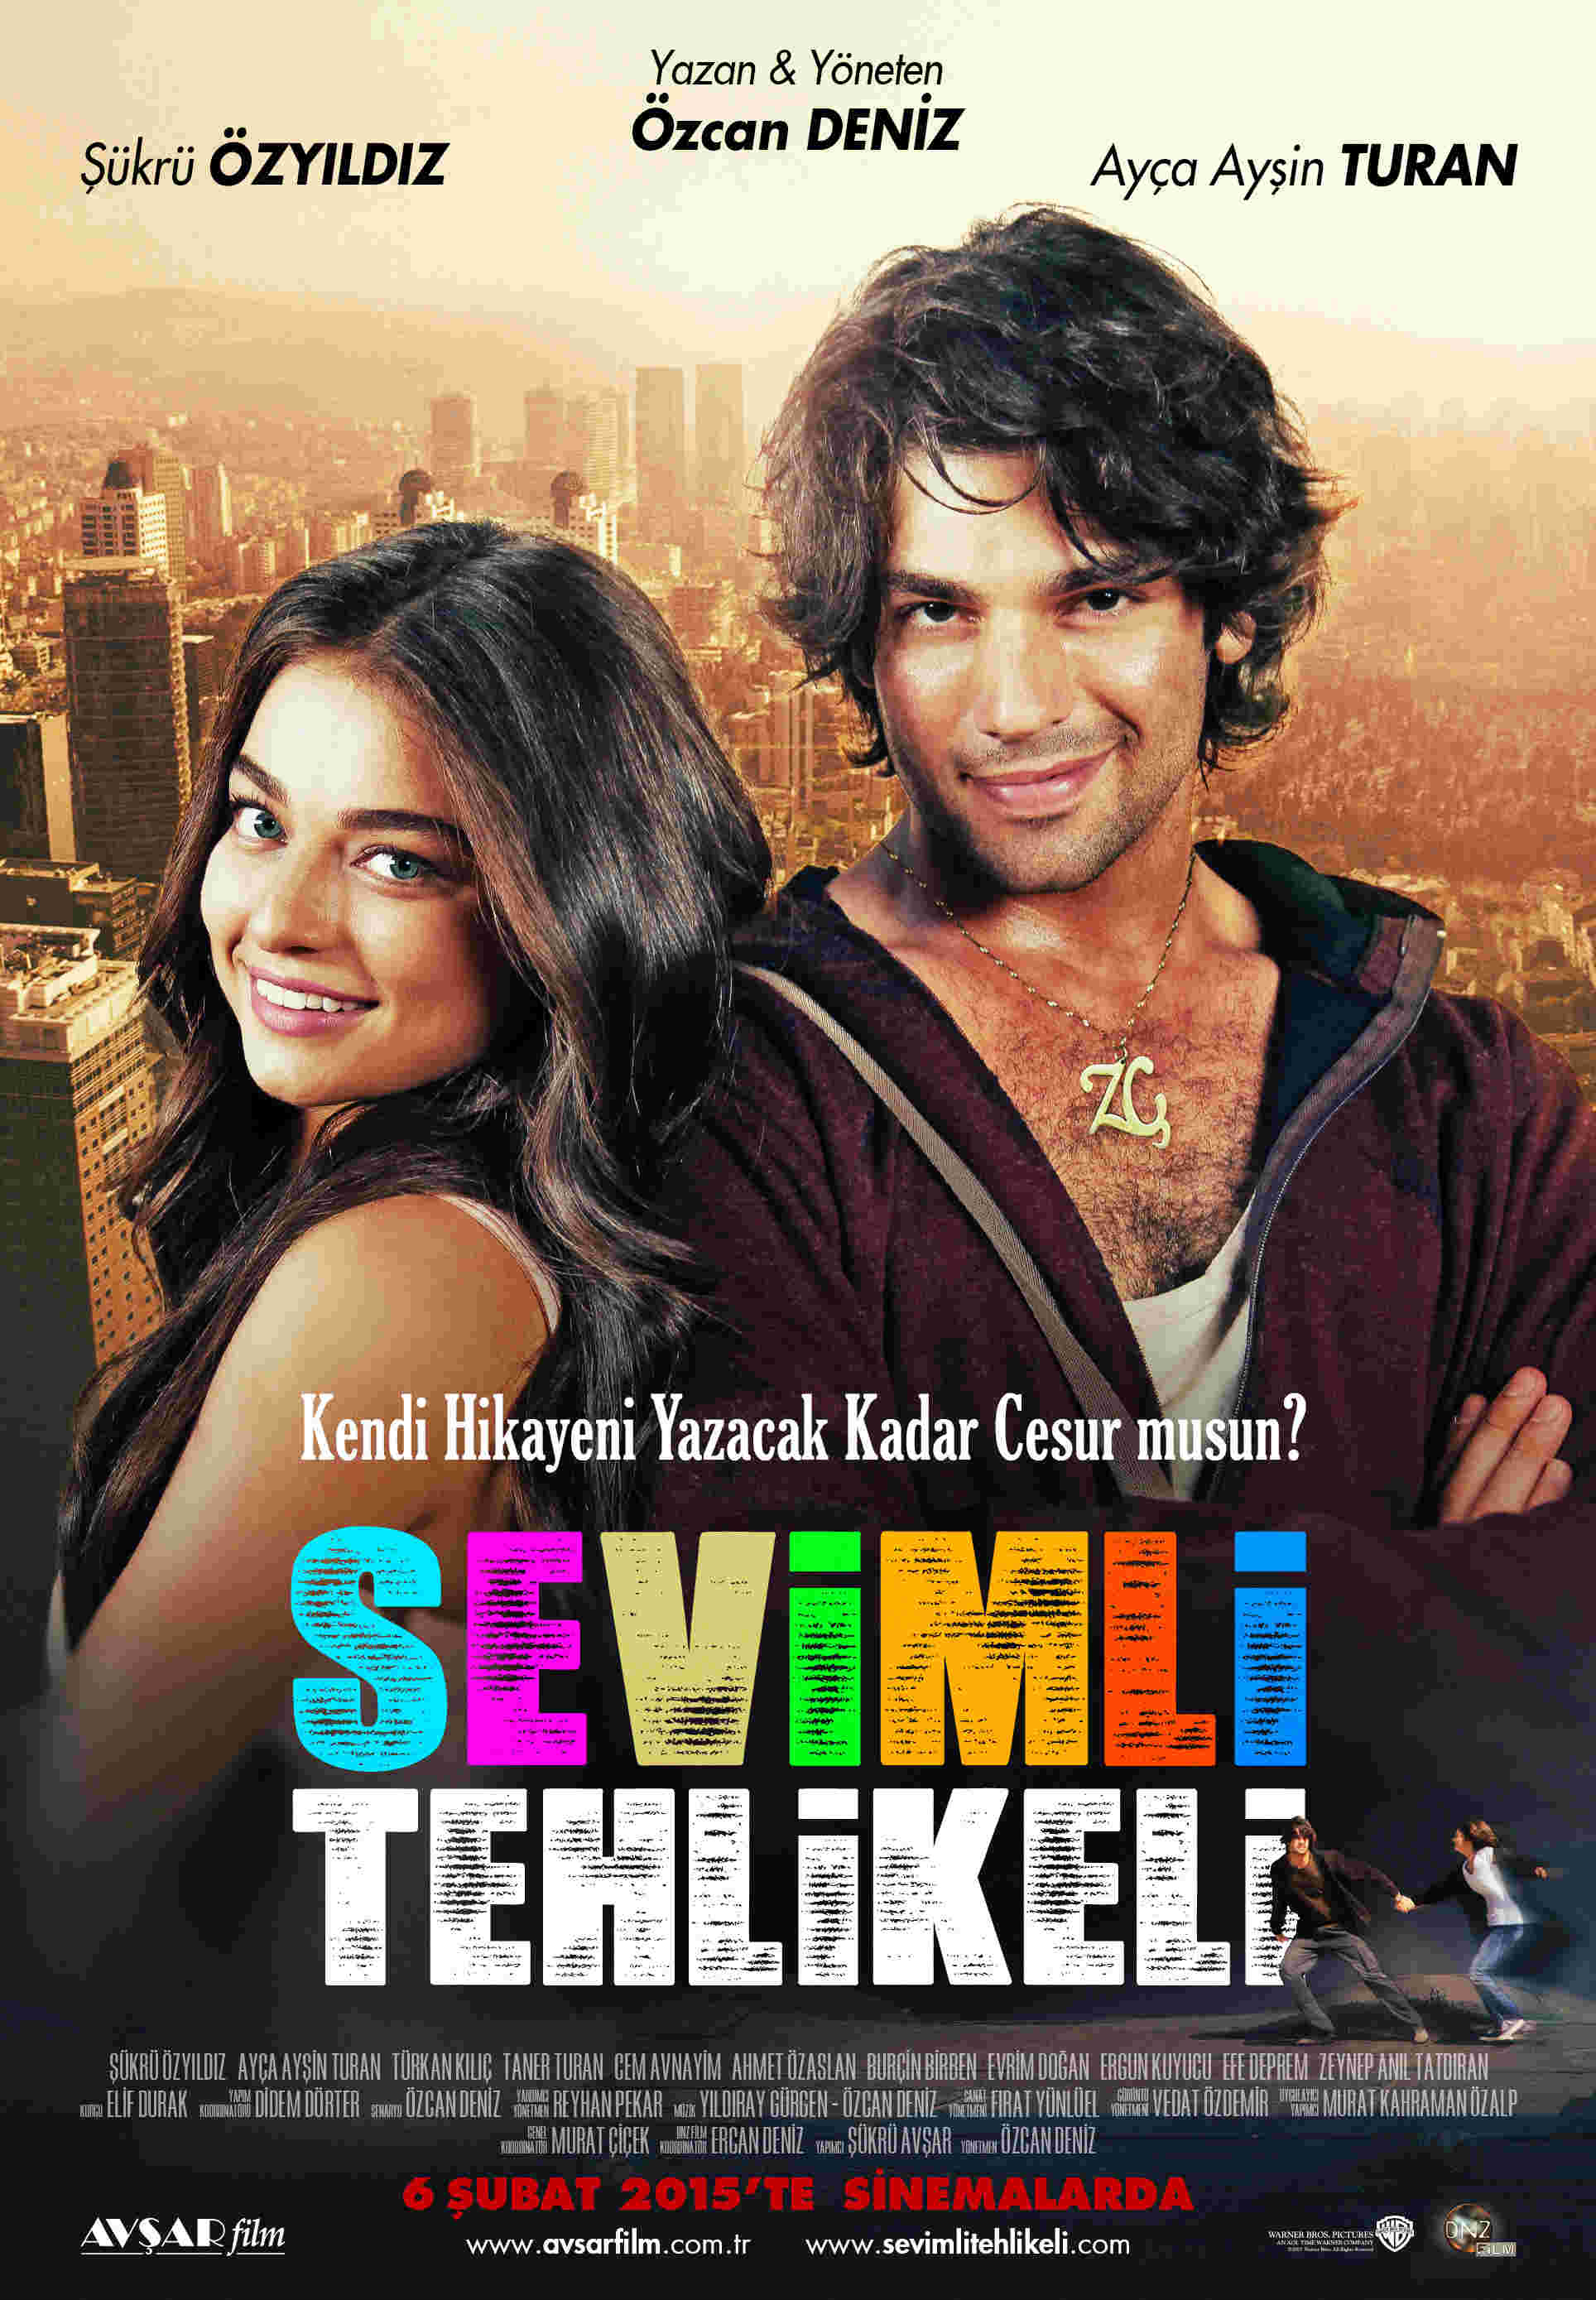 فيلم اللطيف و الخطير Sevimli Tehlikeli